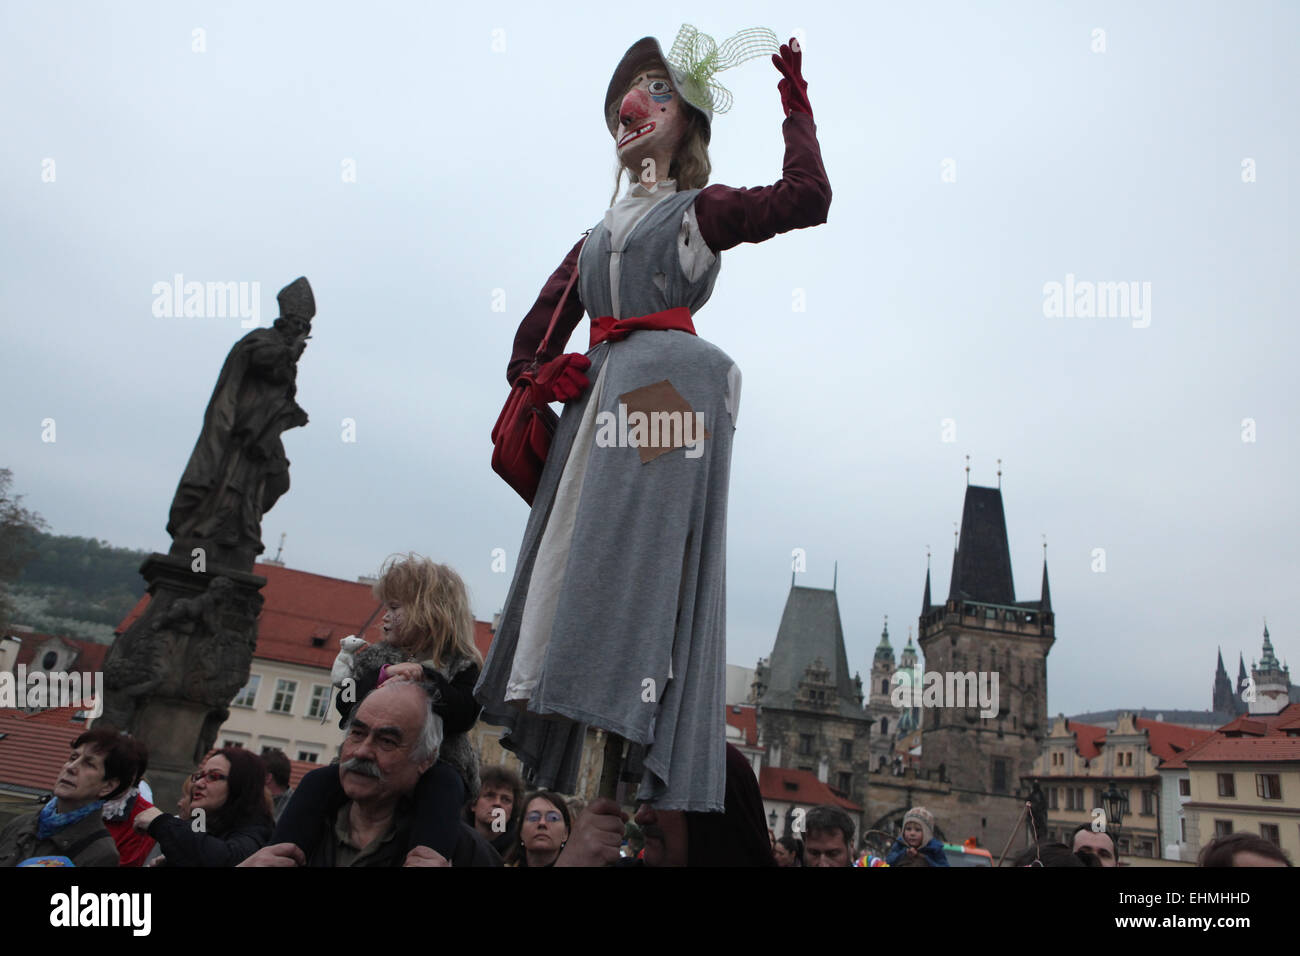 Les participants de la parade costumée à la Nuit des Sorcières portent une sorcière de paille sur le pont Charles à Prague, République tchèque. Banque D'Images